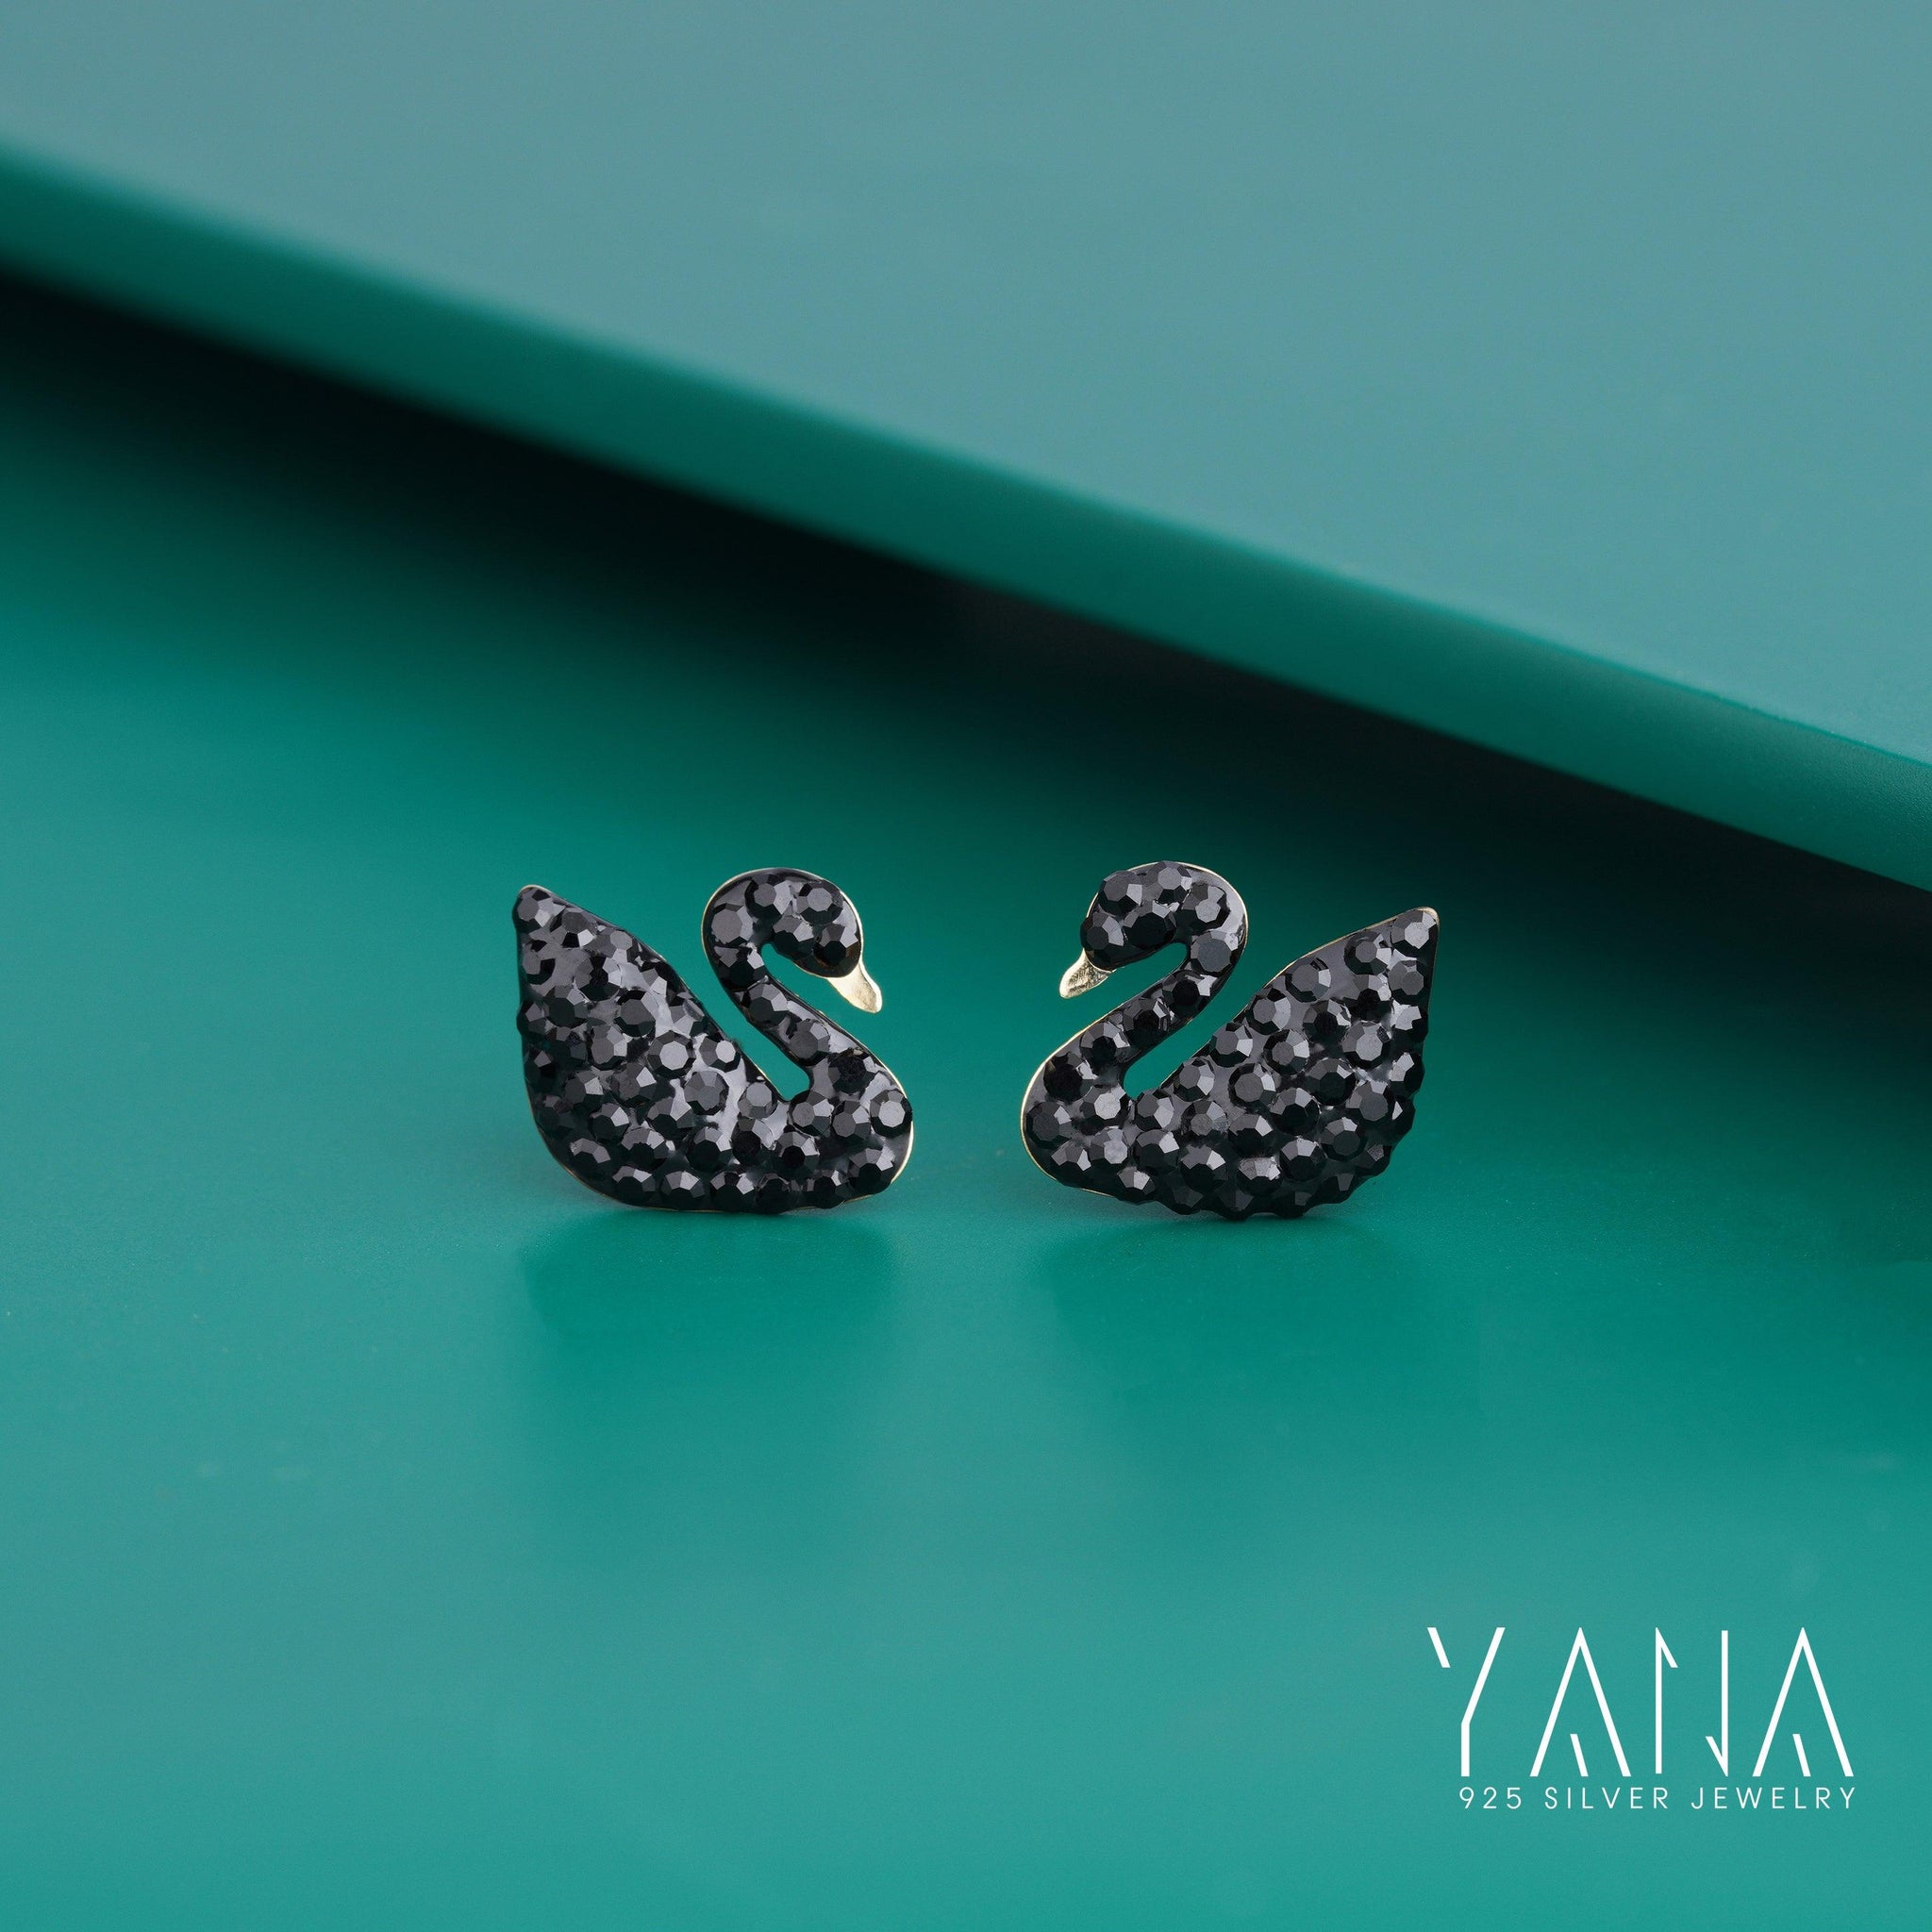 Swan stud earrings for women in 925 silver - YANA SILVER